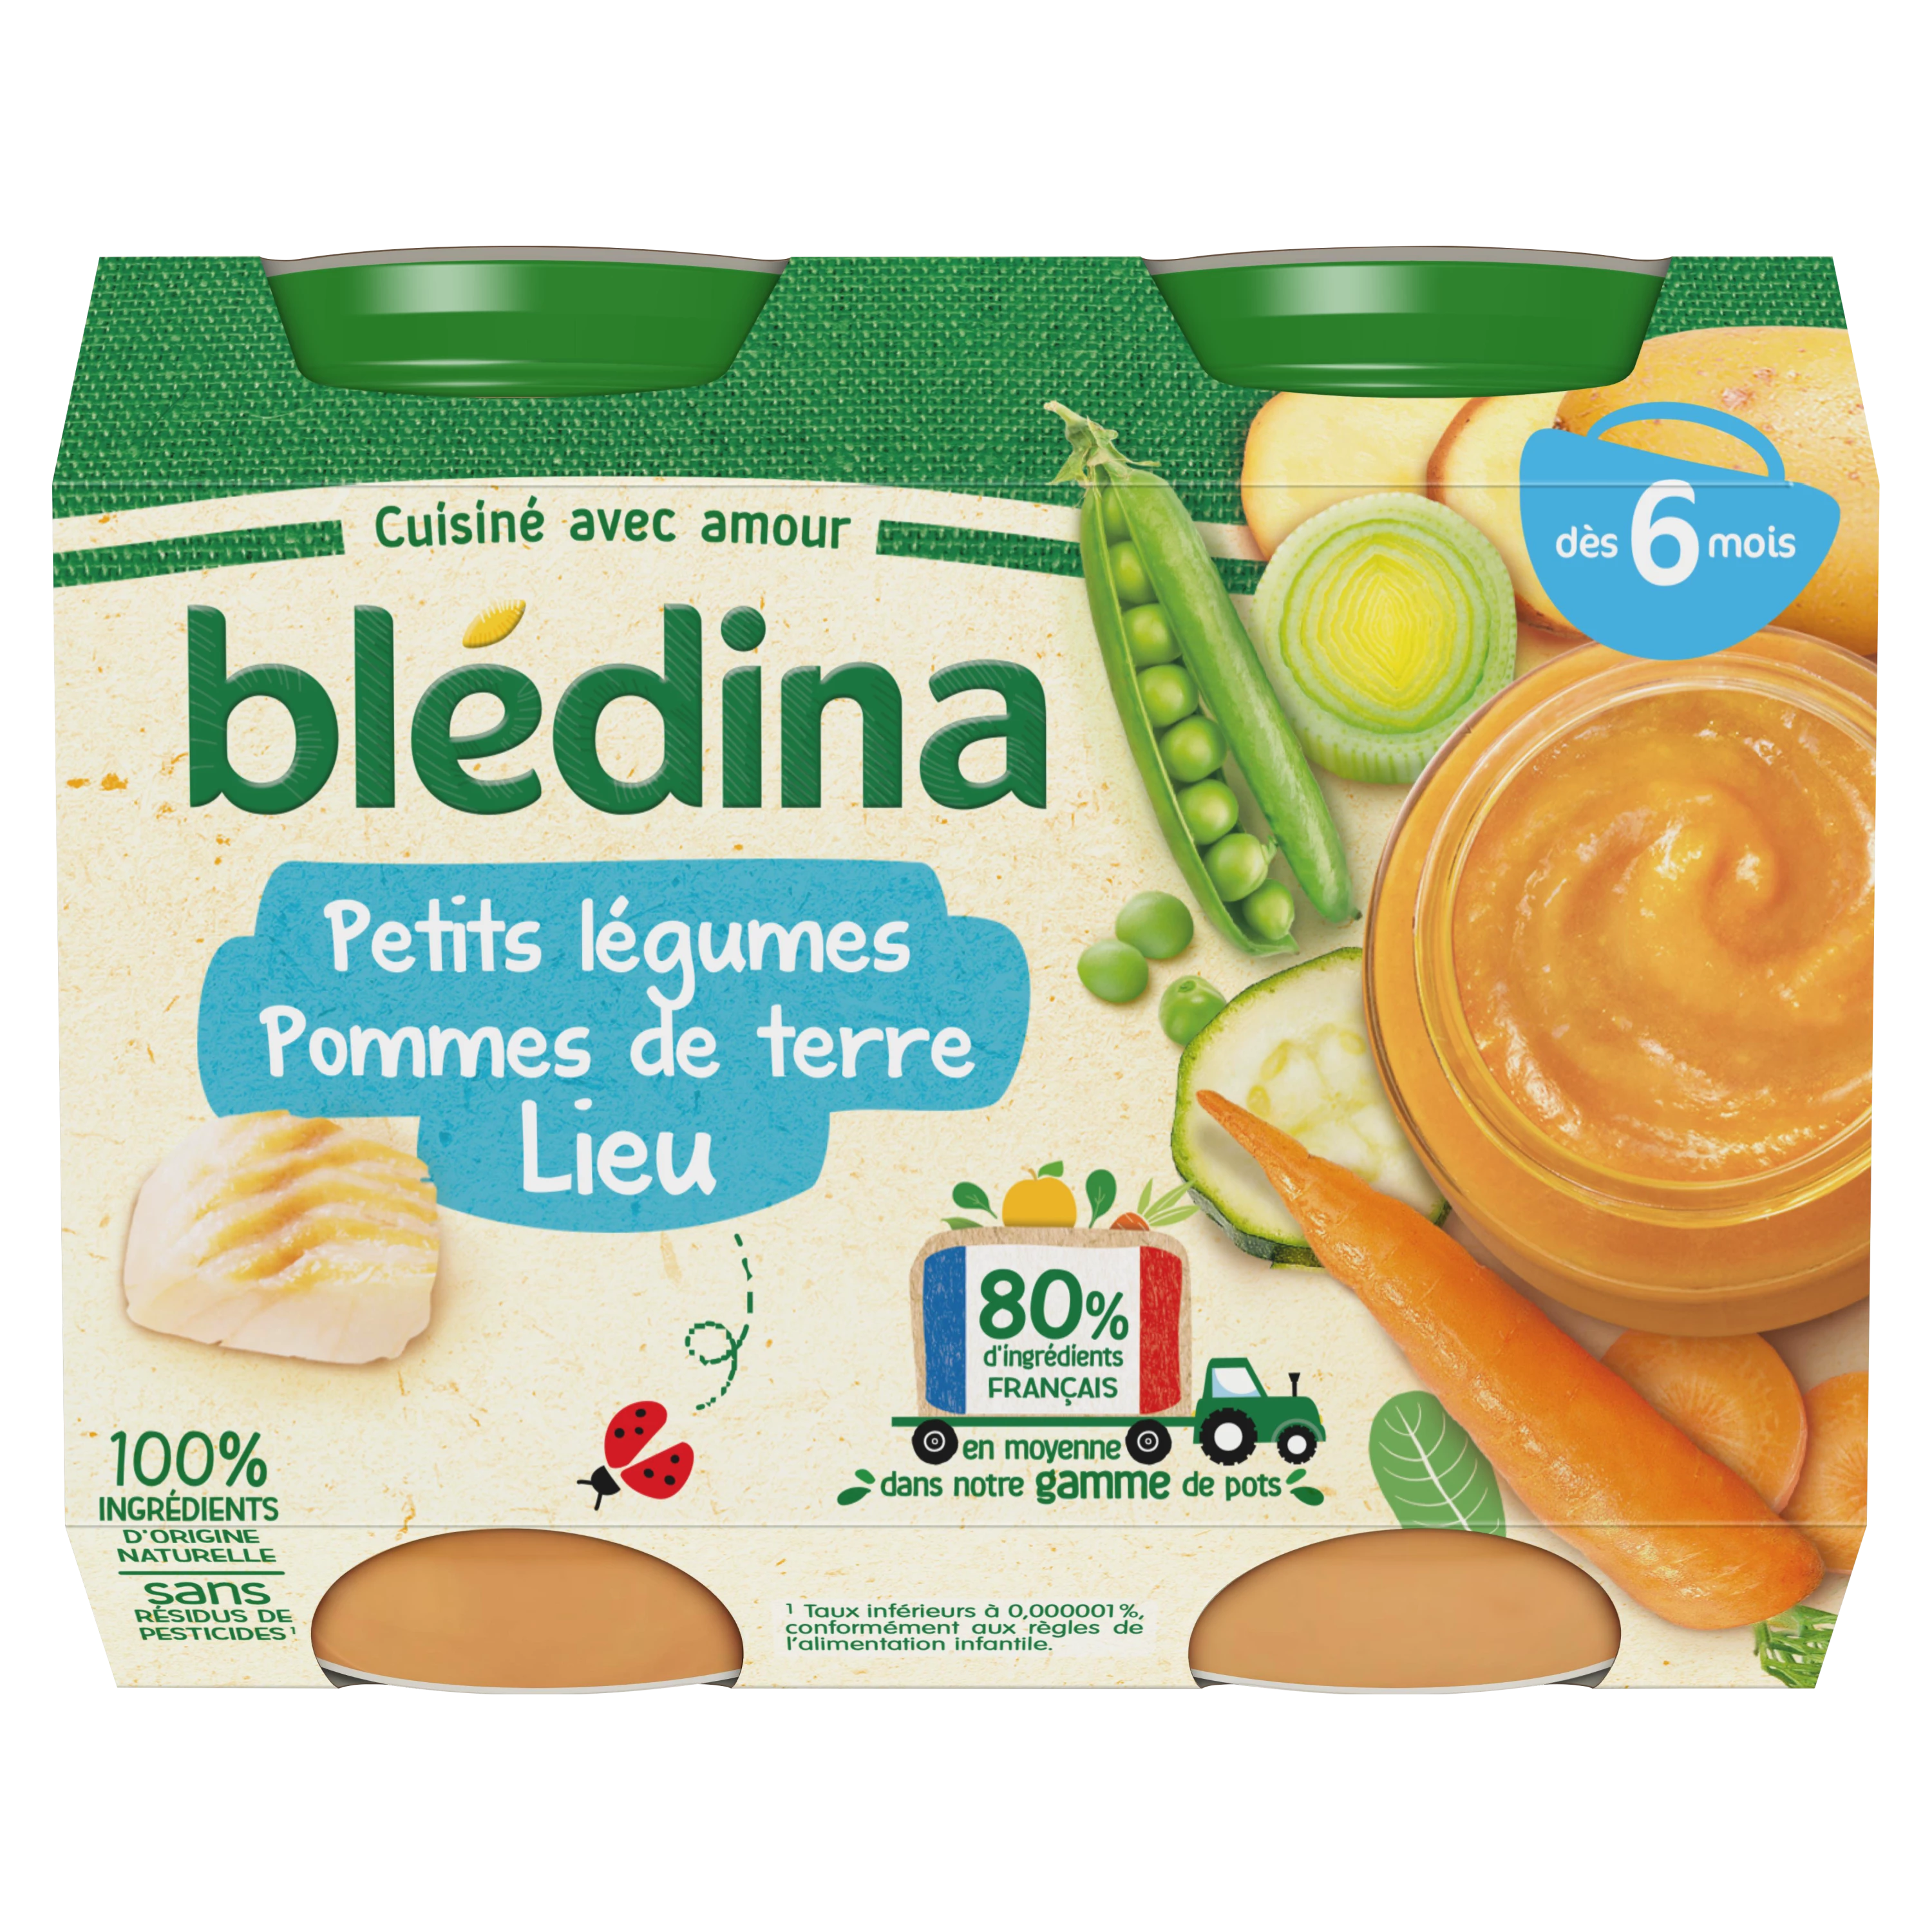 6 个月大婴儿小锅蔬菜土豆块 2x200g - BLEDINA